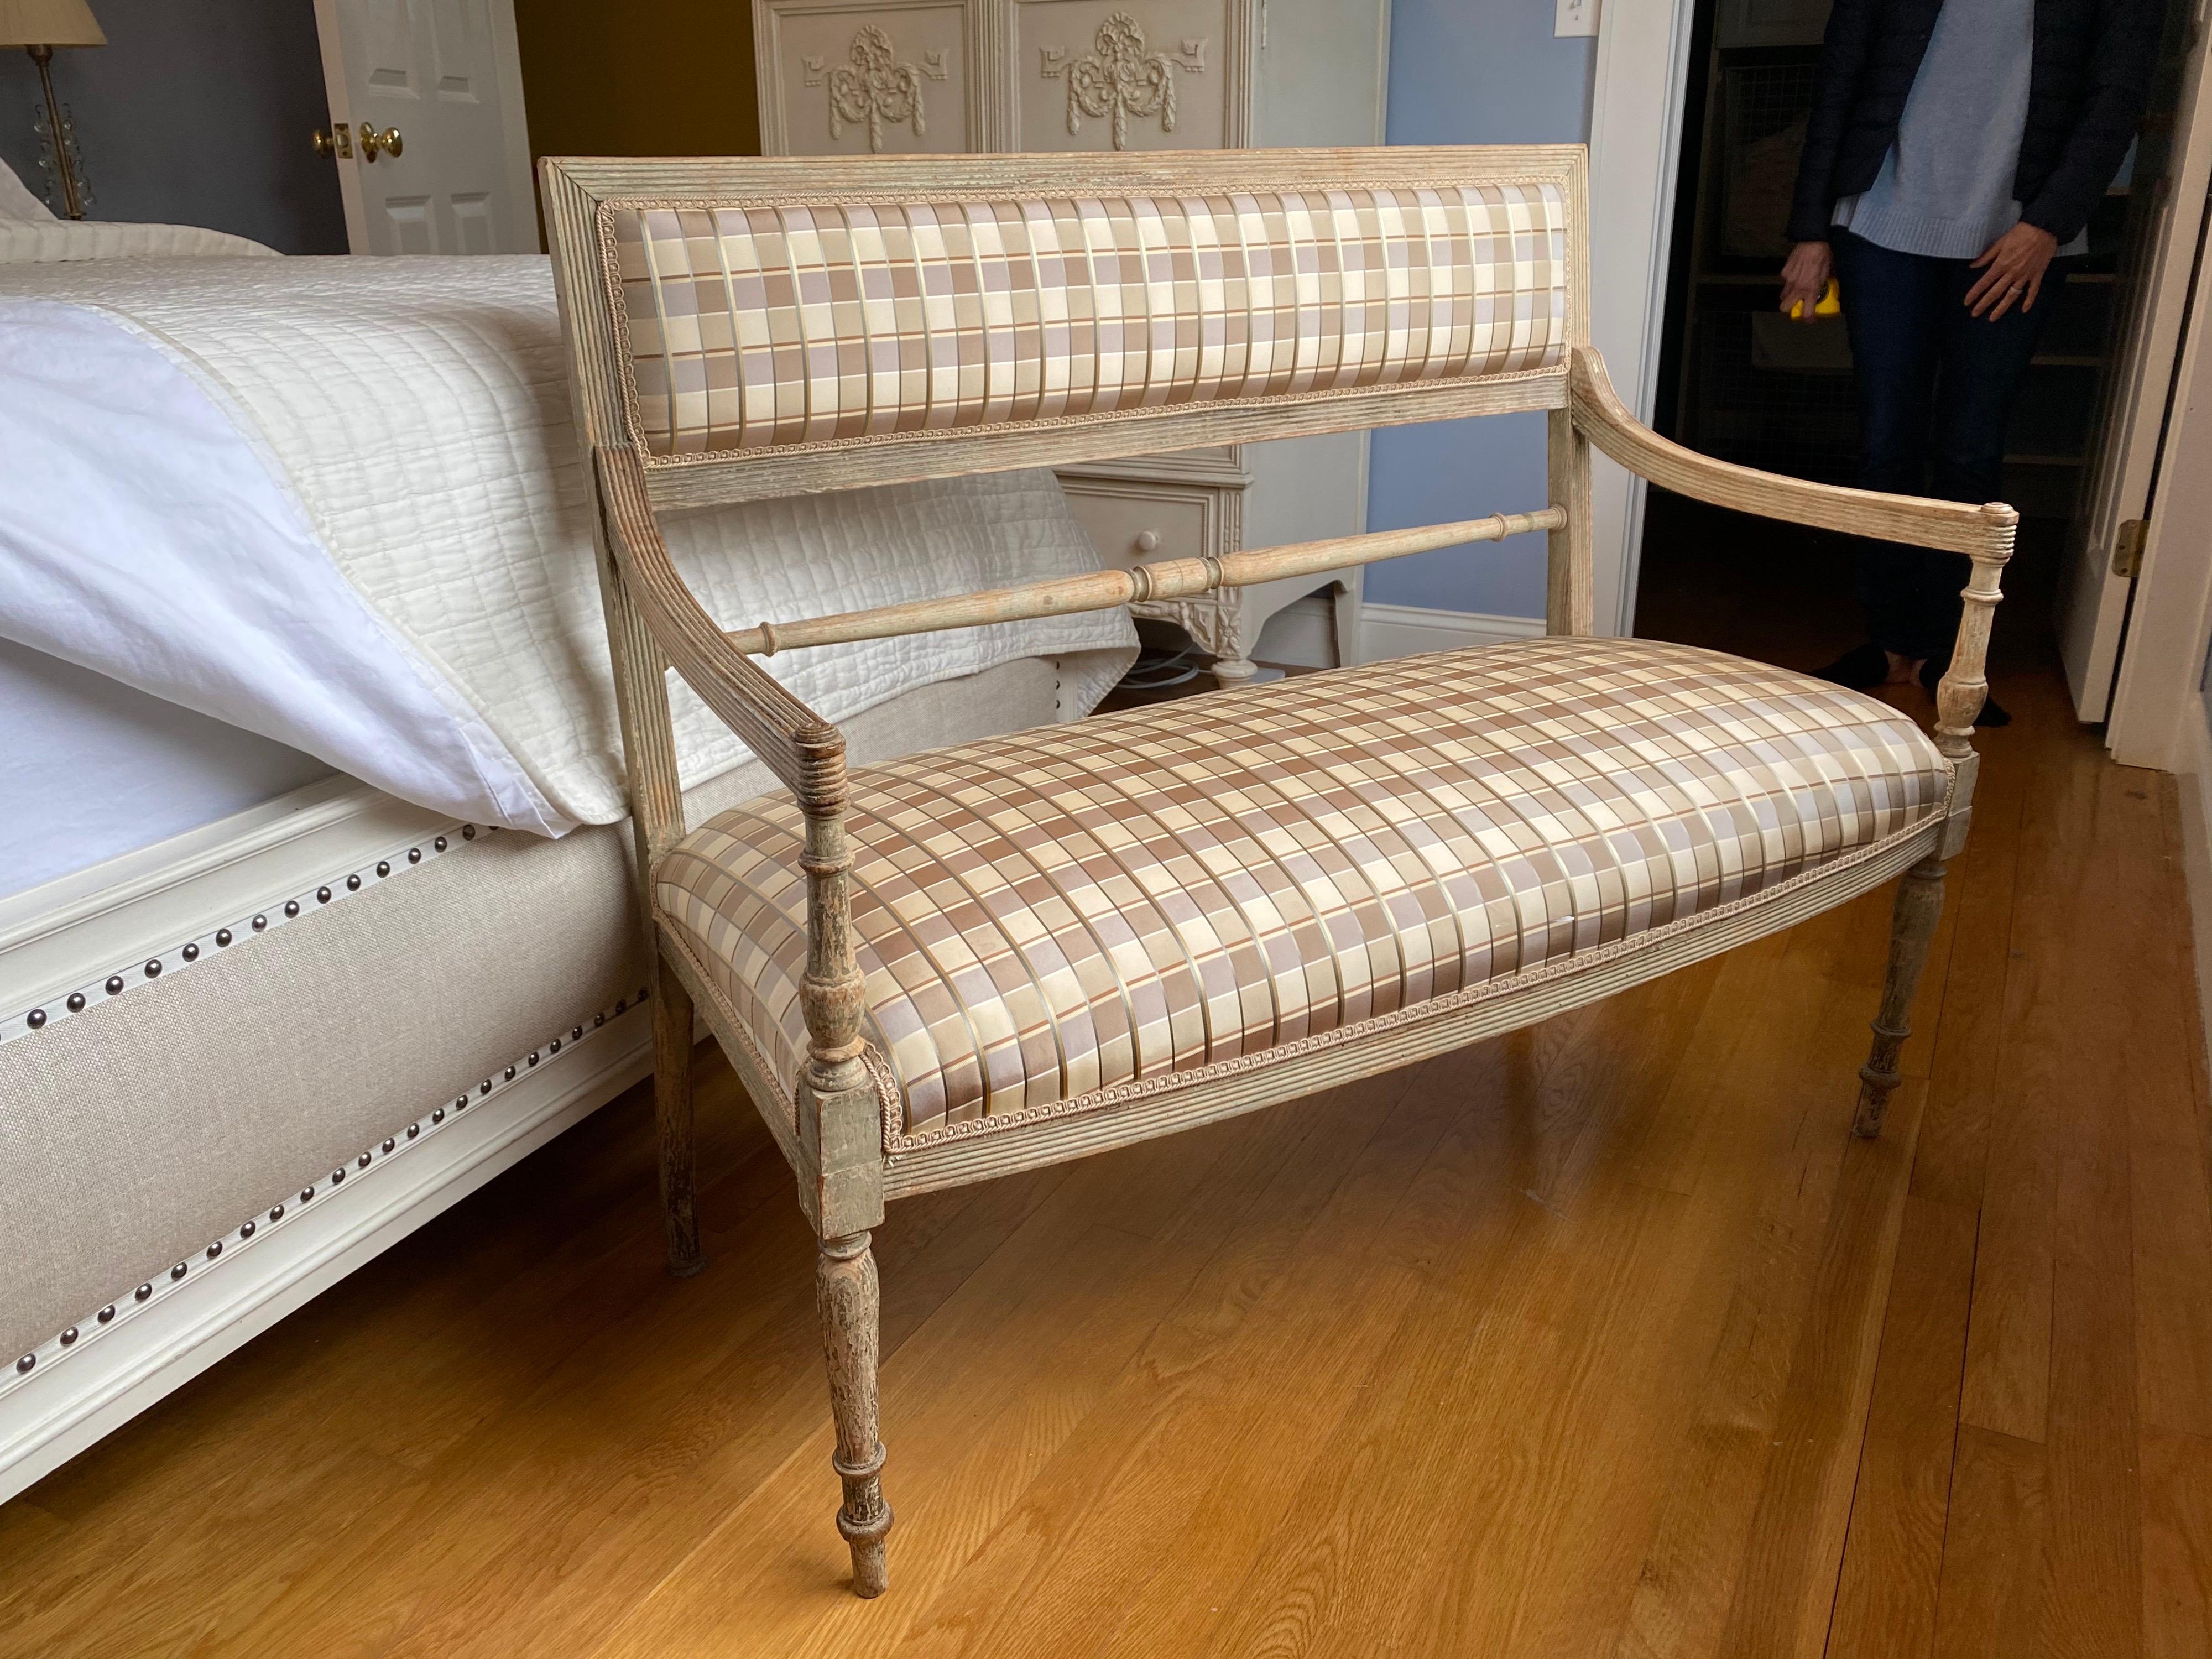 schwedisches bemaltes Sofa aus dem 19. Jahrhundert mit Seidenkaro.
Schönes Design.
Strukturell gesund, Seidenplaid am oberen Rücken gerissen. Alterung der Oberfläche entsprechend dem Gebrauch.
Maße: 42.25